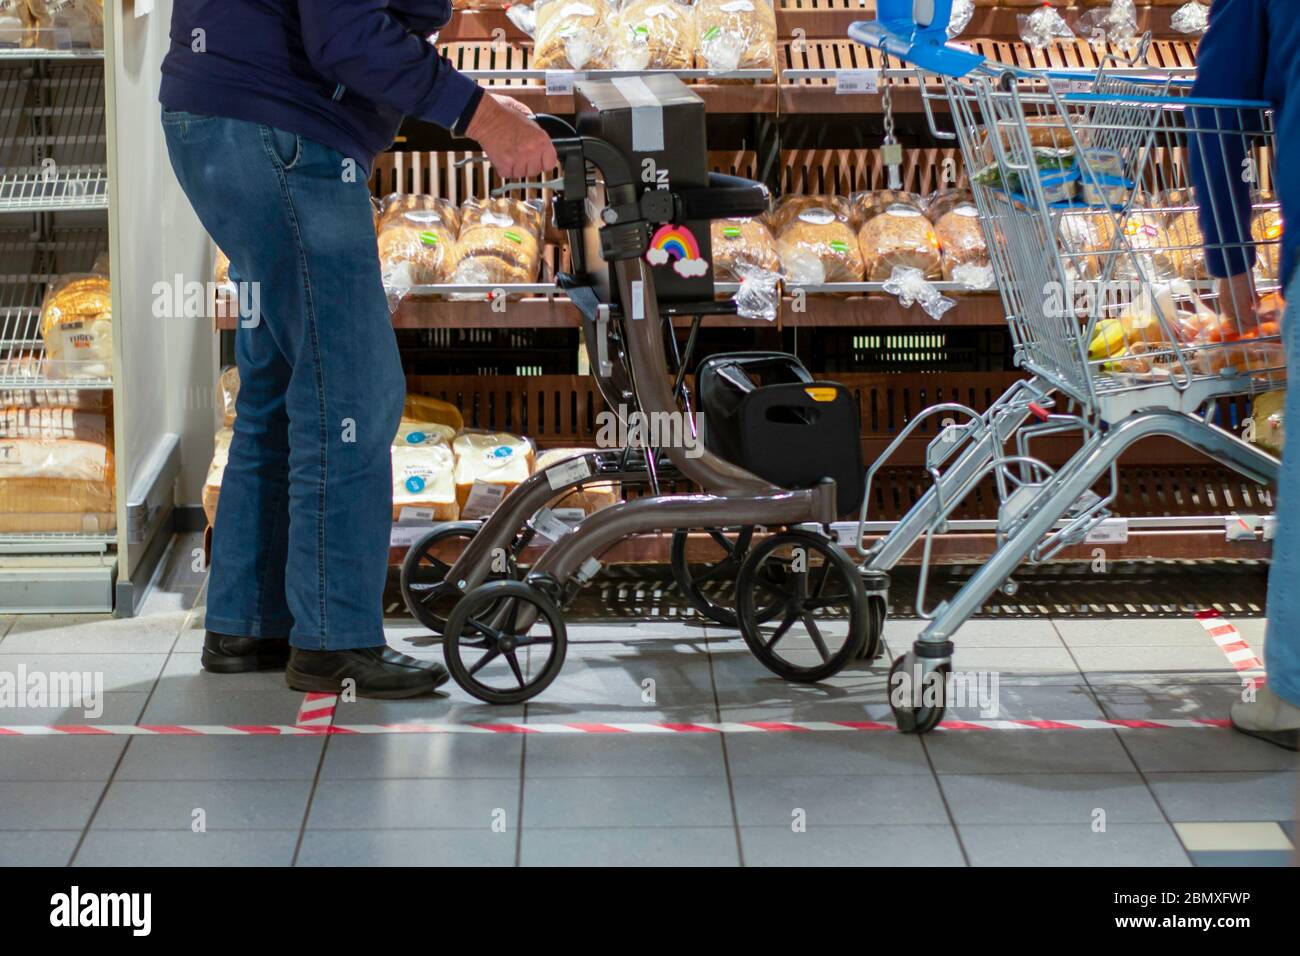 Uomo anziano che fa generi alimentari insieme in un supermercato durante la pandemia di coronavirus covid-19. Il nastro a terra indica la distanza sociale di sicurezza Foto Stock